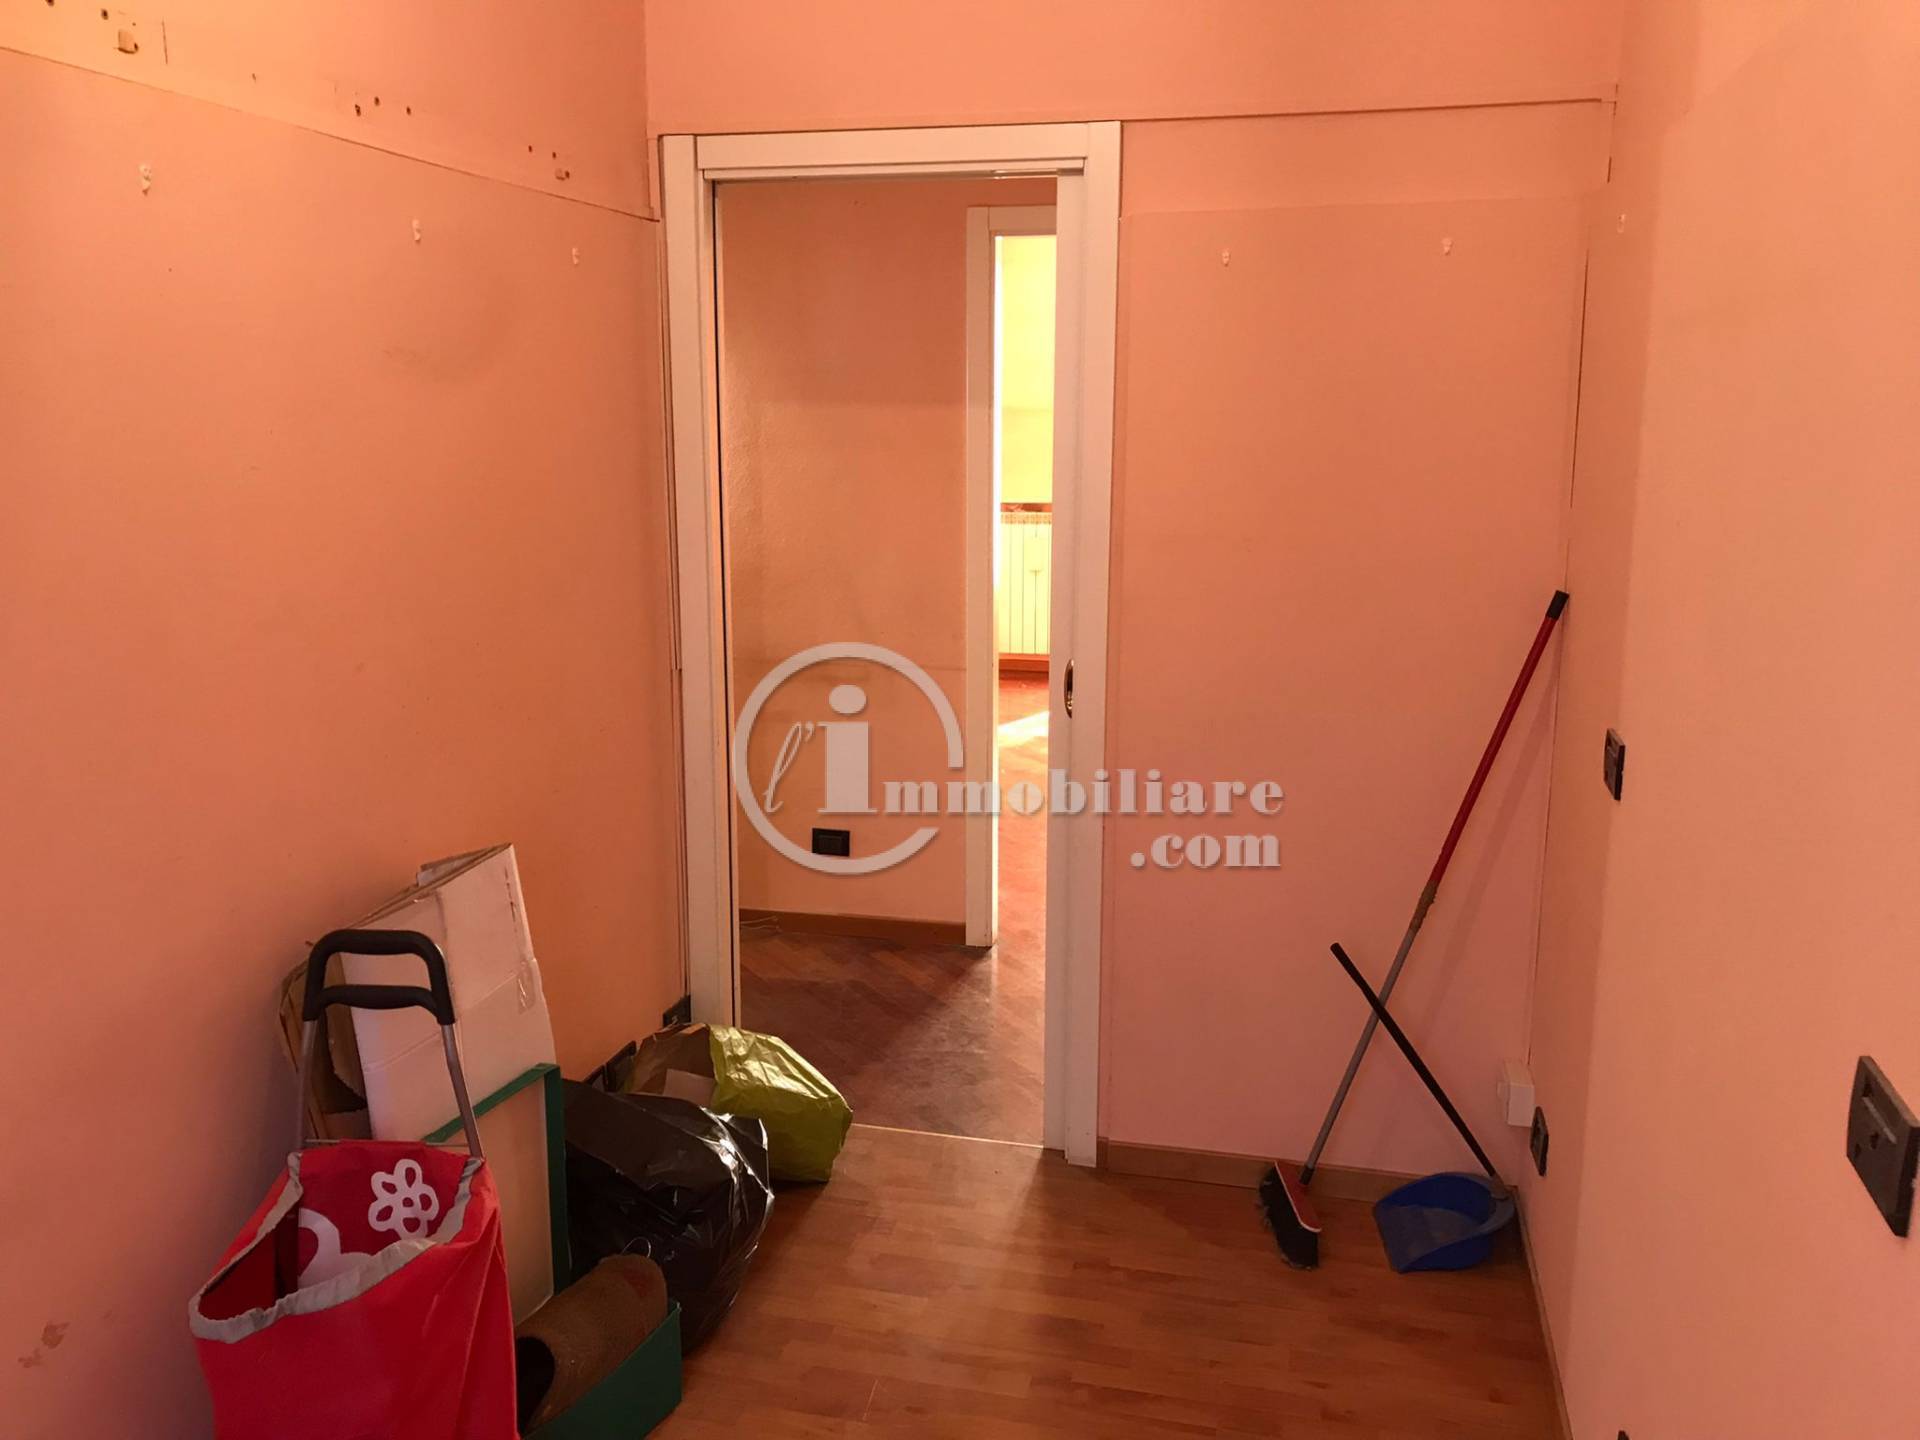 Appartamento in Vendita a Milano: 4 locali, 104 mq - Foto 18